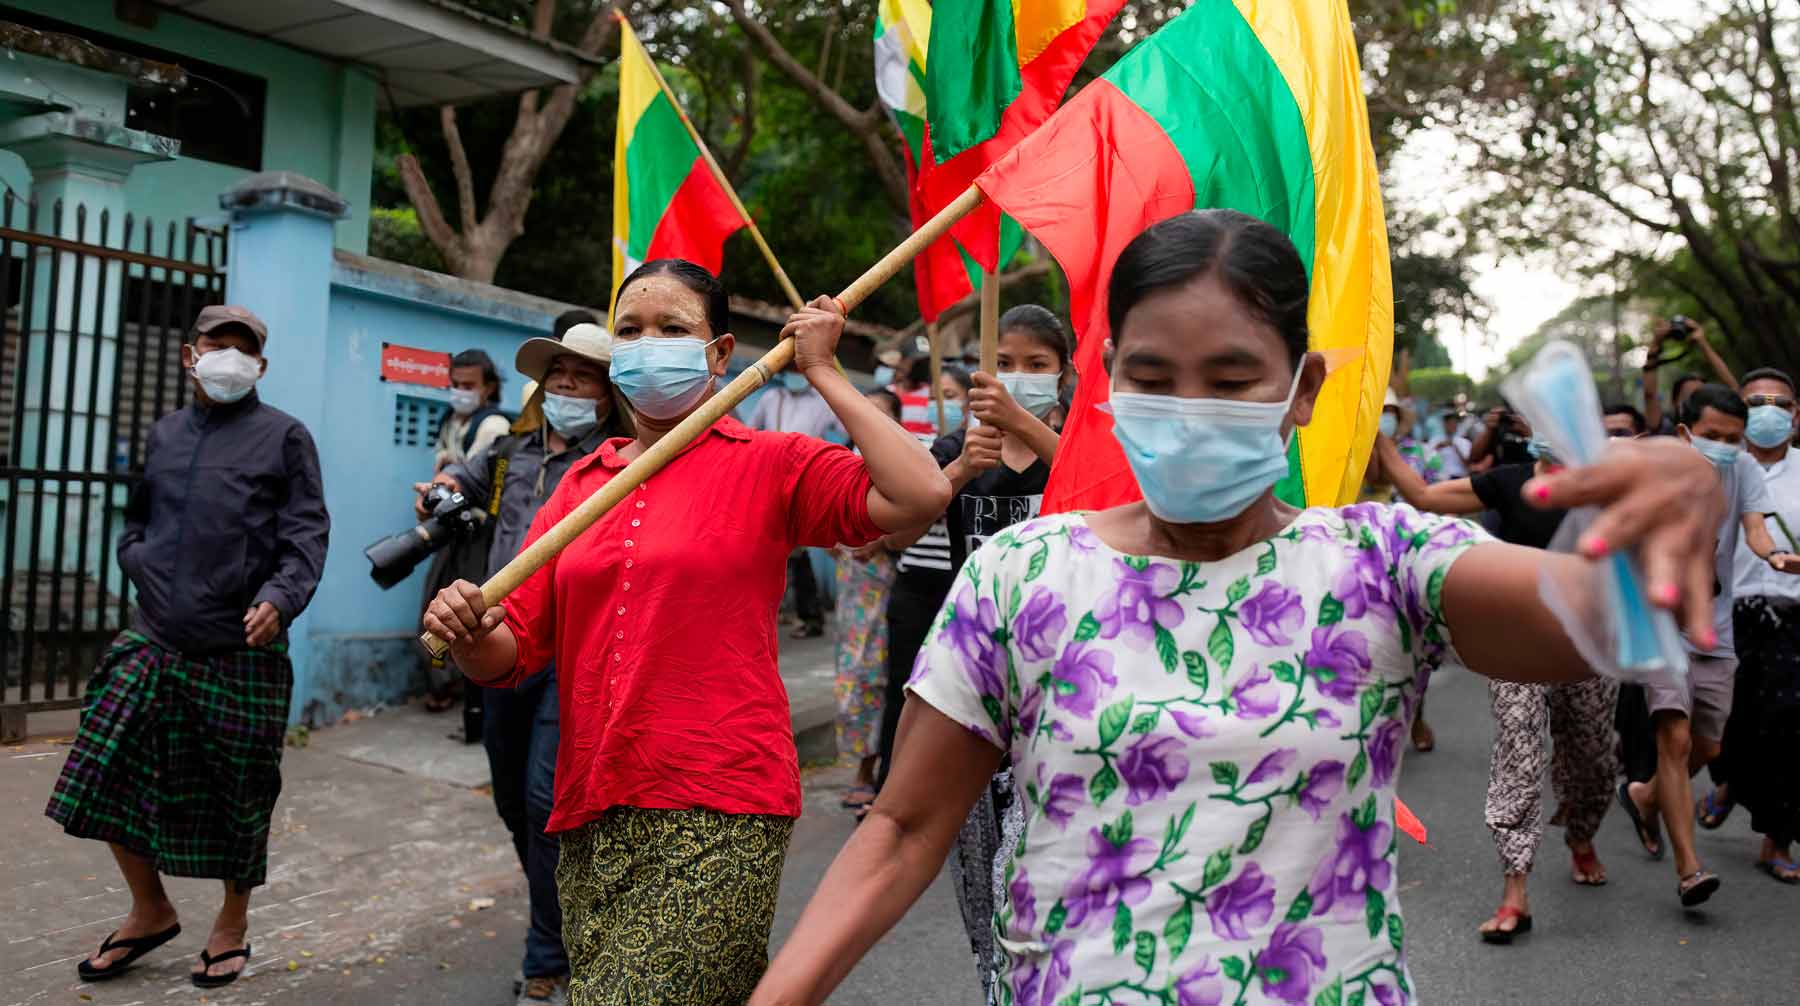 Накануне вооруженные силы взяли под контроль власть в стране и объявили чрезвычайное положение Фото: © Global Look Press / Aung Kyaw Htet